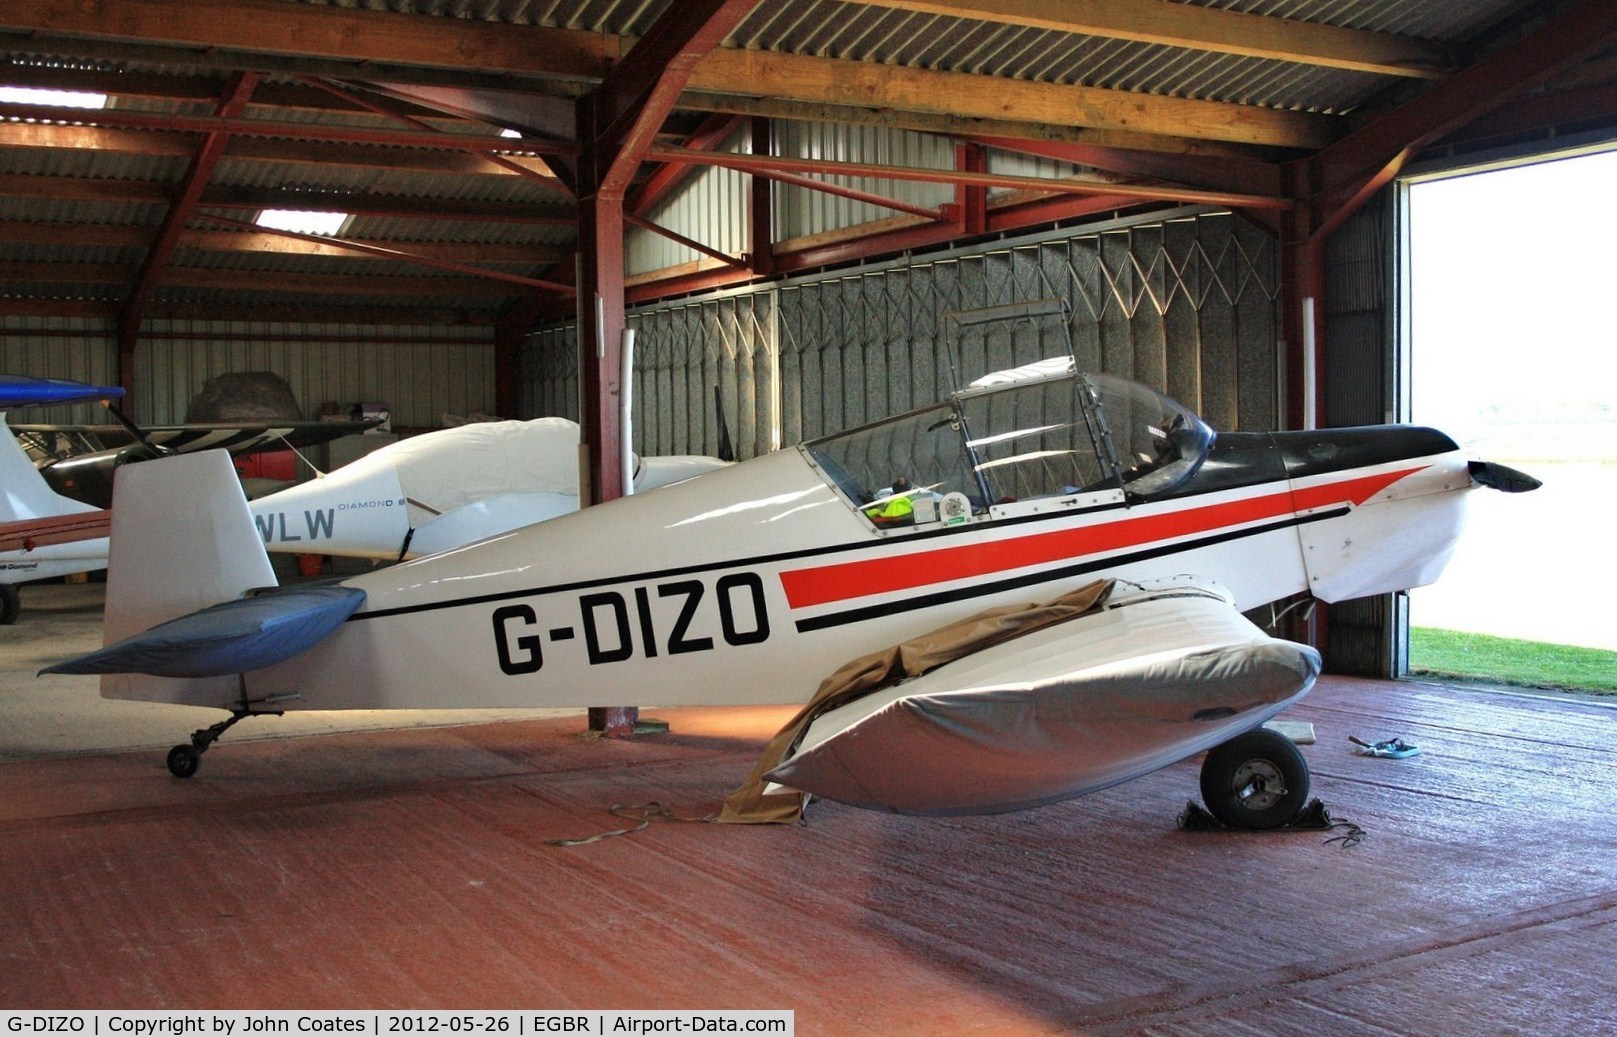 G-DIZO, 1965 Jodel D-120 Paris-Nice C/N 326, Hangared